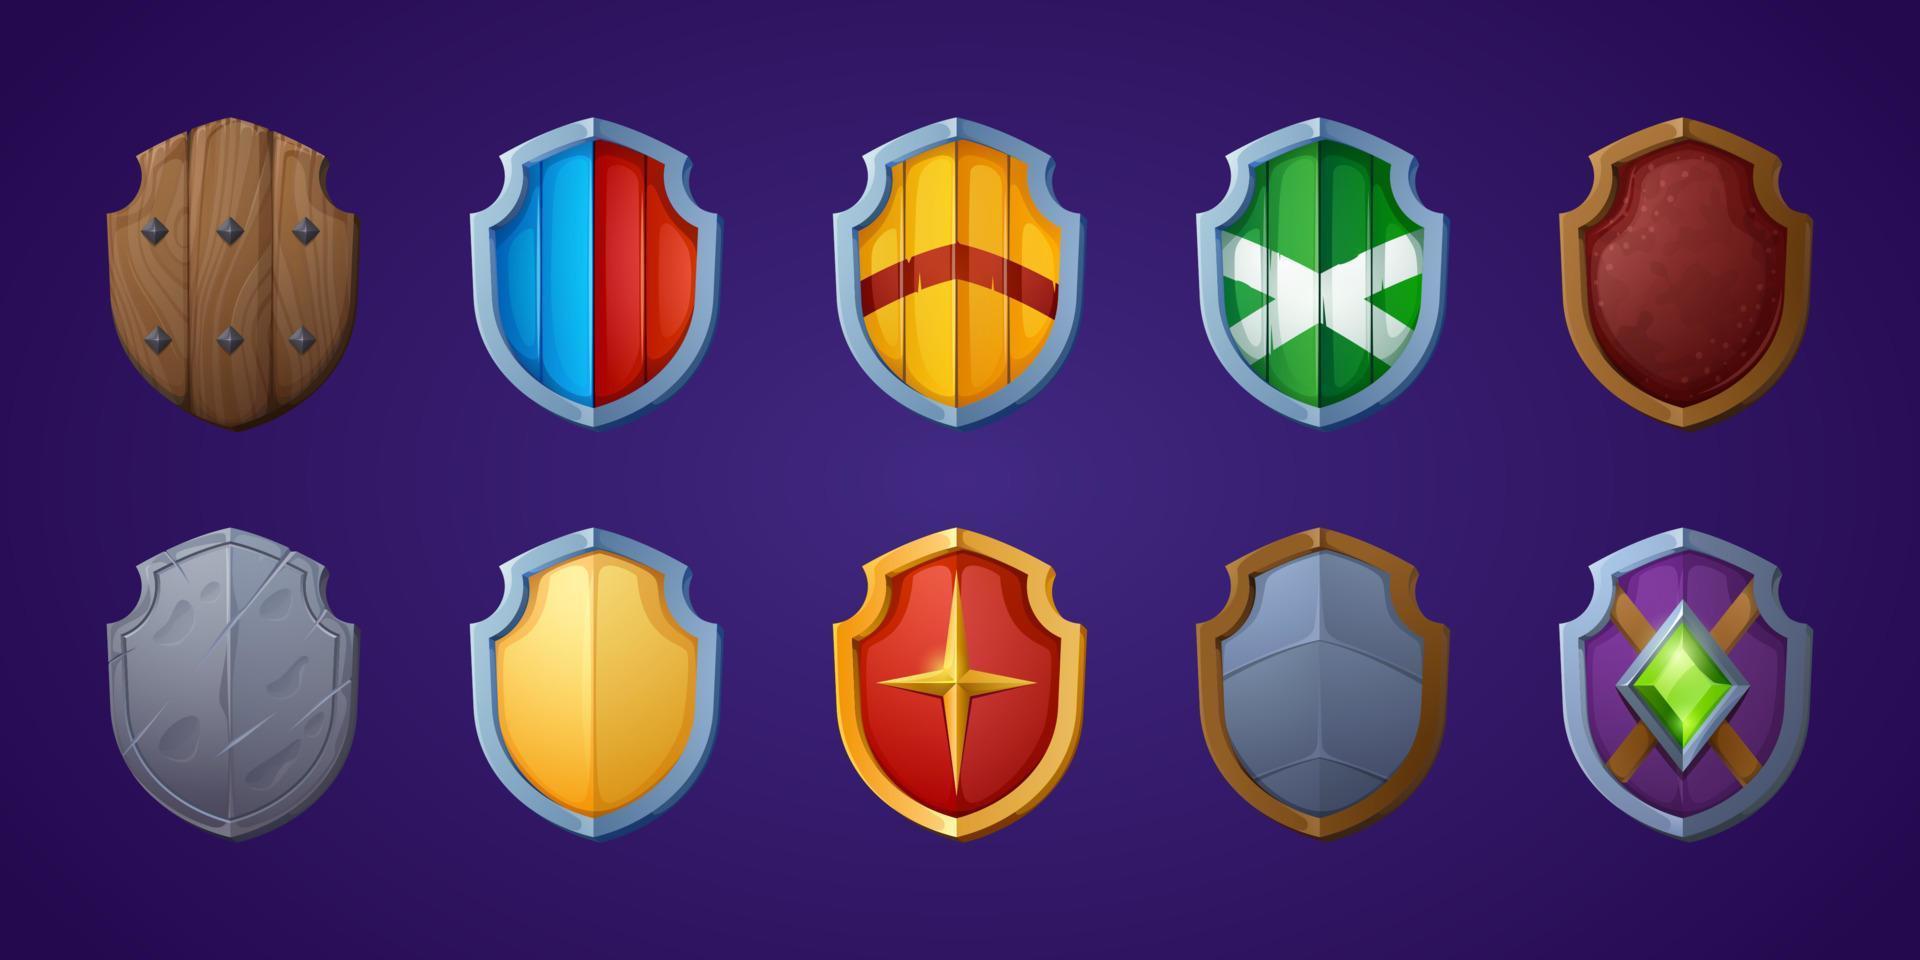 juego de escudos de juego armadura medieval de fantasía de dibujos animados vector